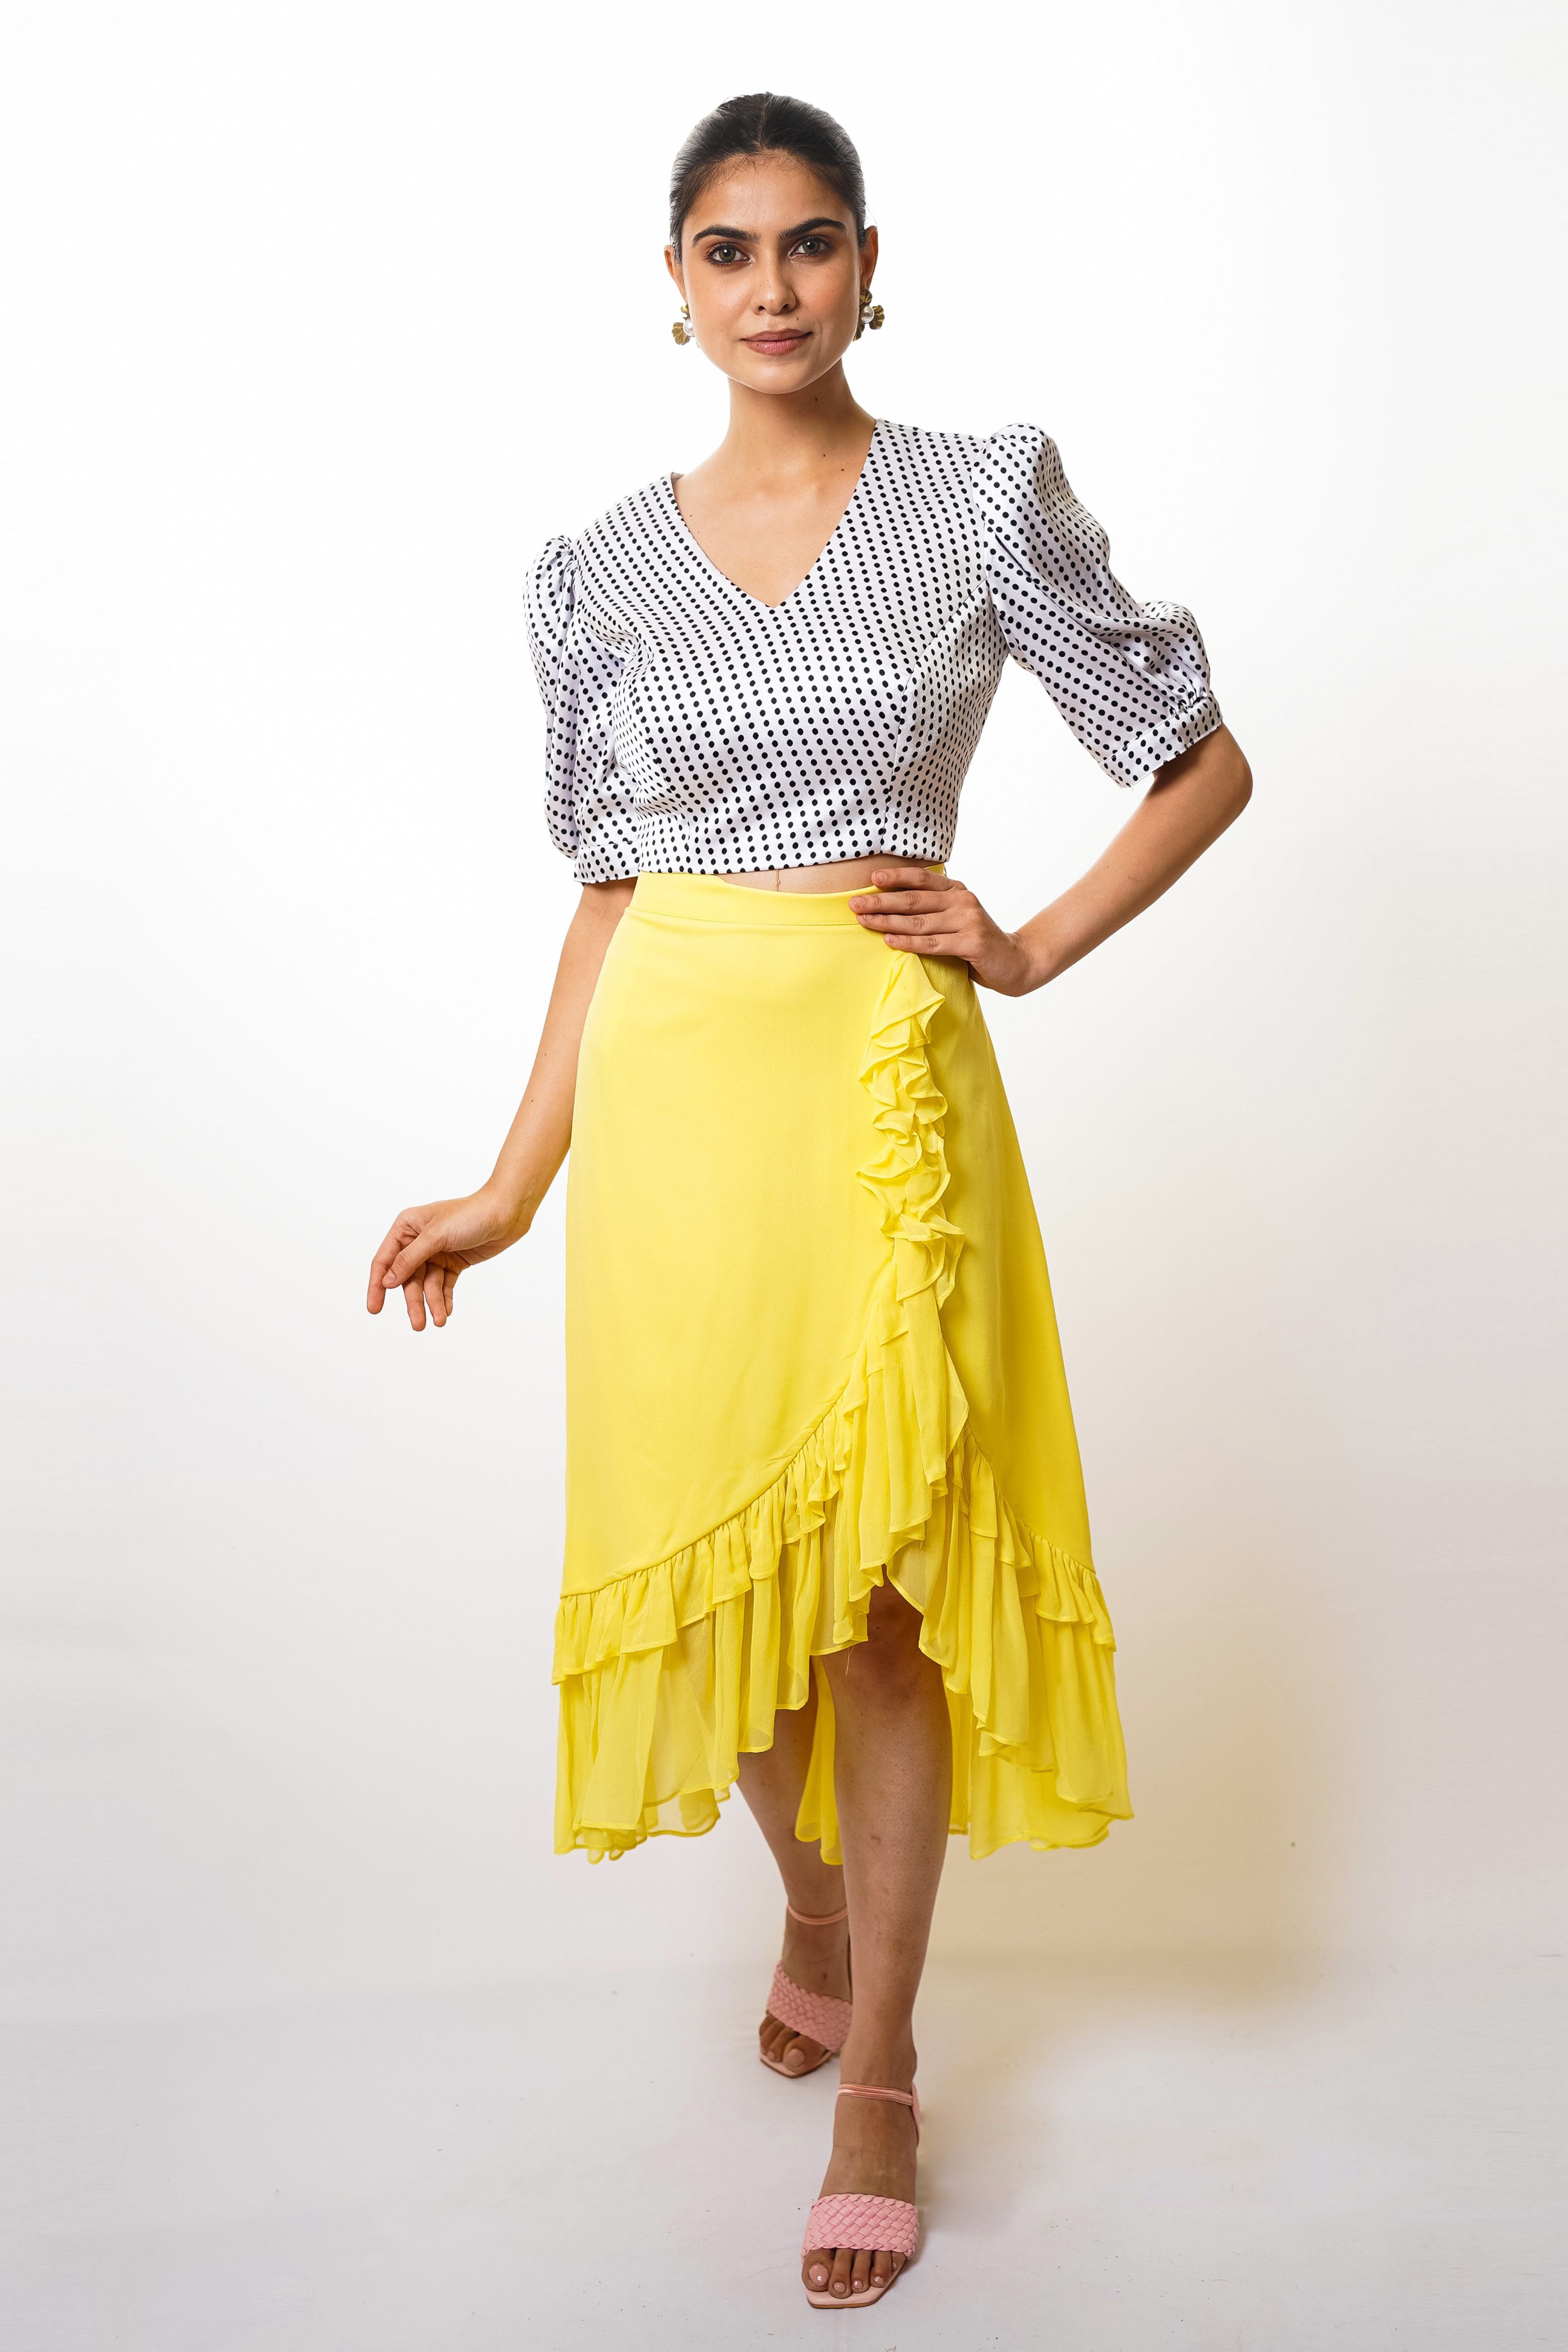 Yellow ruffle skirt